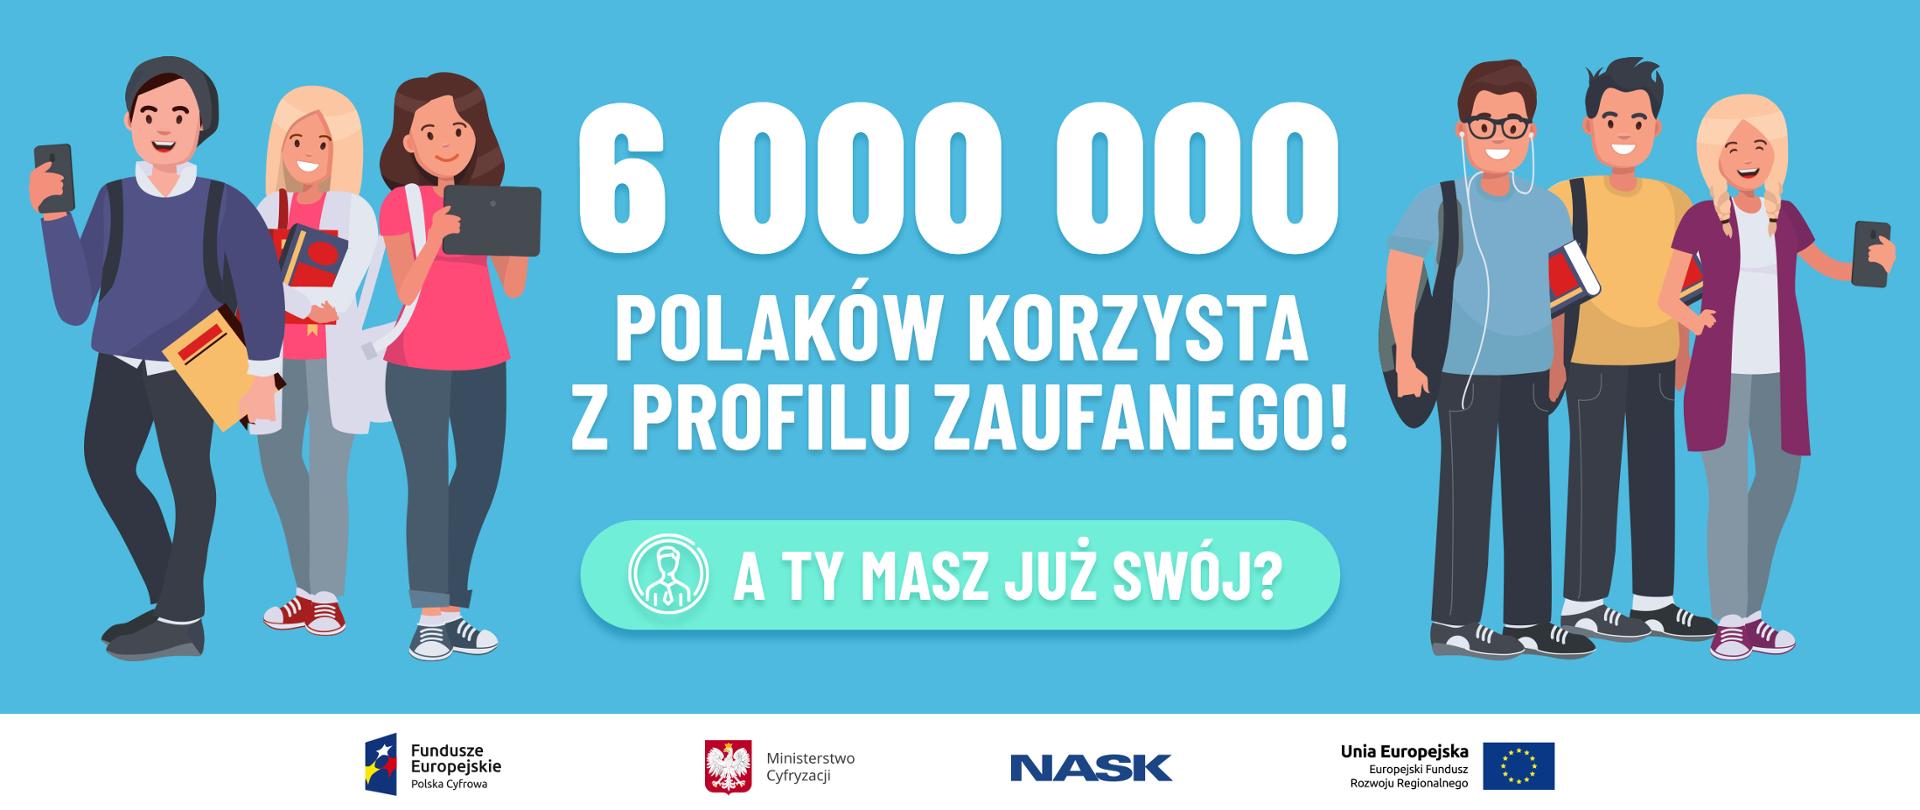 Na środku napis: 6000000 Polaków korzysta z profilu zaufanego! A Ty masz już swój? Po obu stronach uśmiechnięci ludzie z tabletami i telefonami. Grafika komputerowa